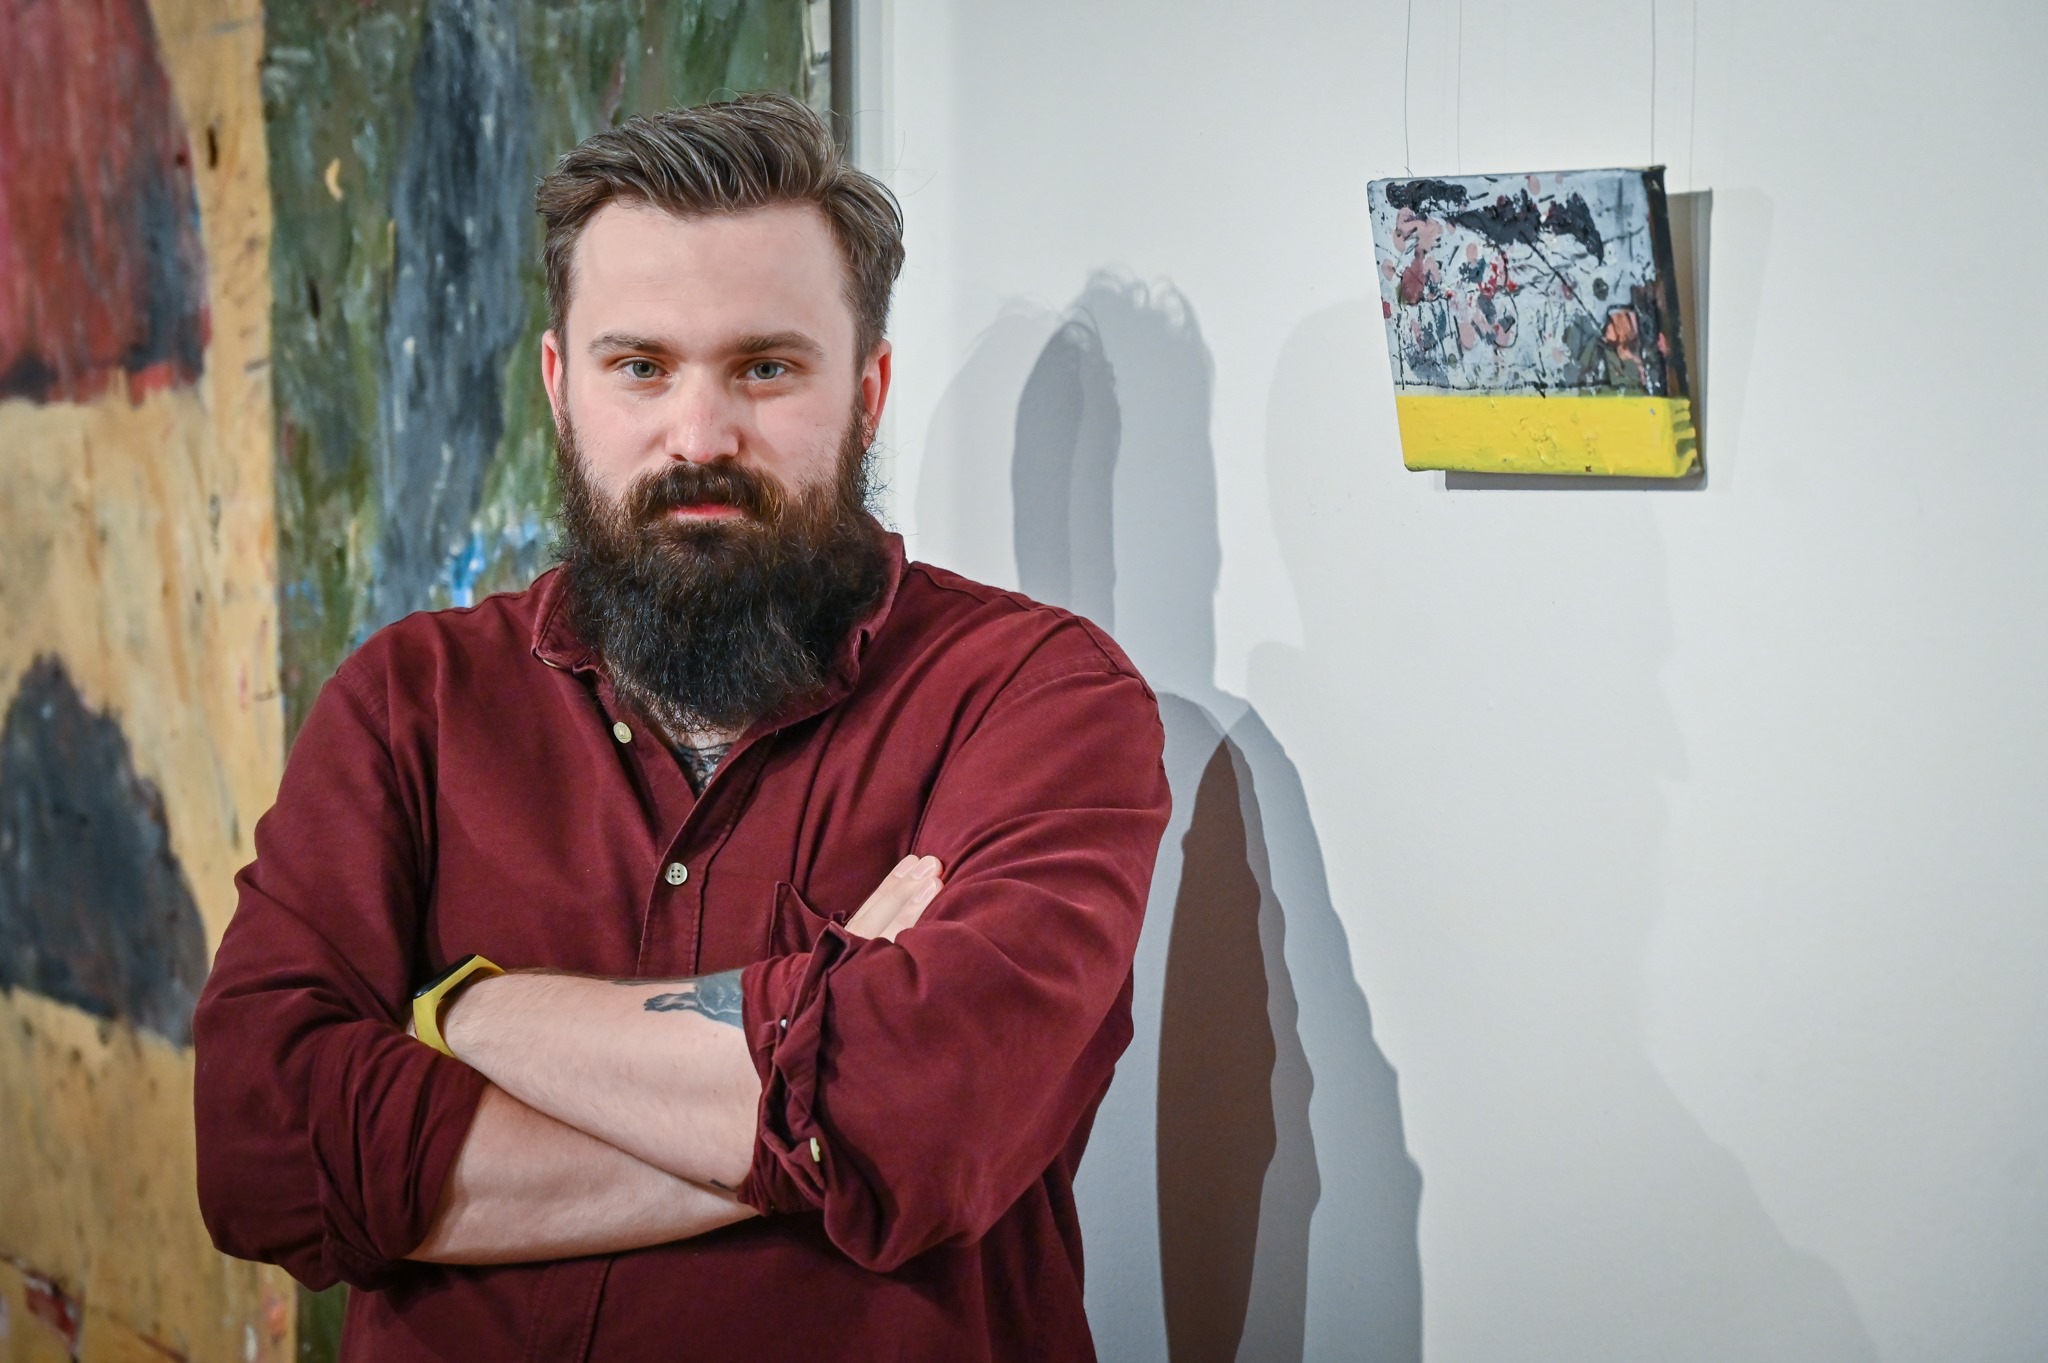 Malarstwo Mateusza Pawełczyka zagości w Ośrodku Promocji Kultury "Gaude Mater" 5